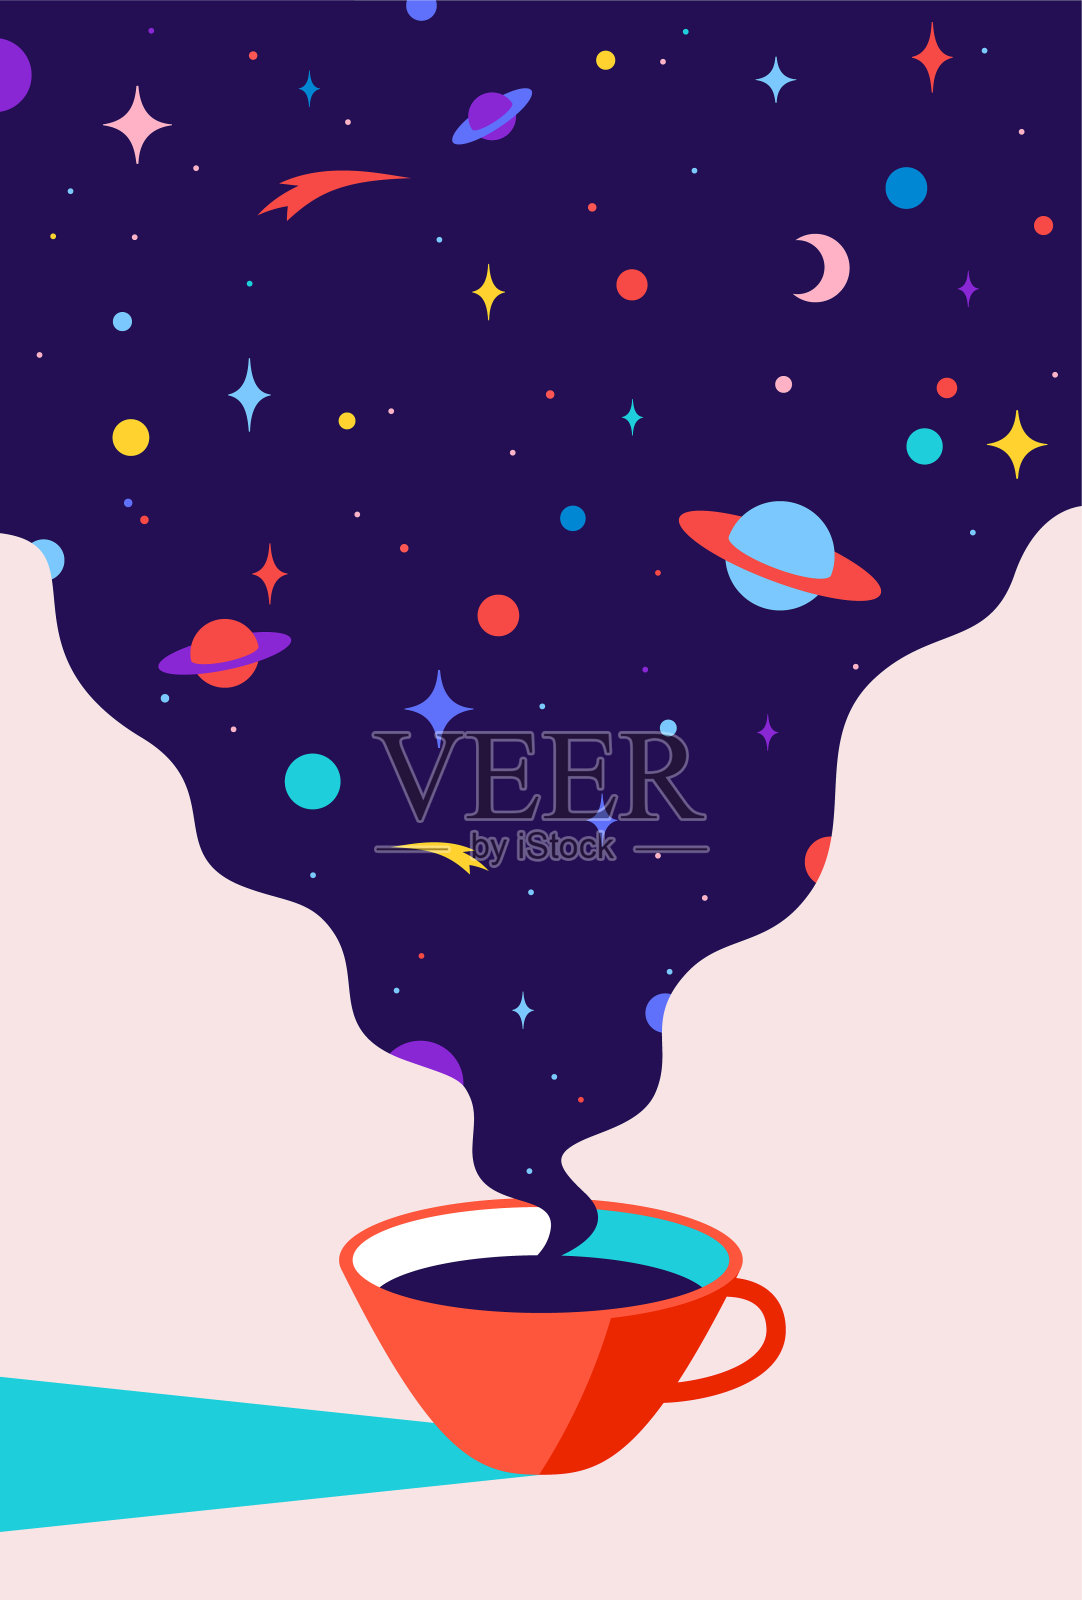 咖啡。一杯带着宇宙梦想的咖啡插画图片素材